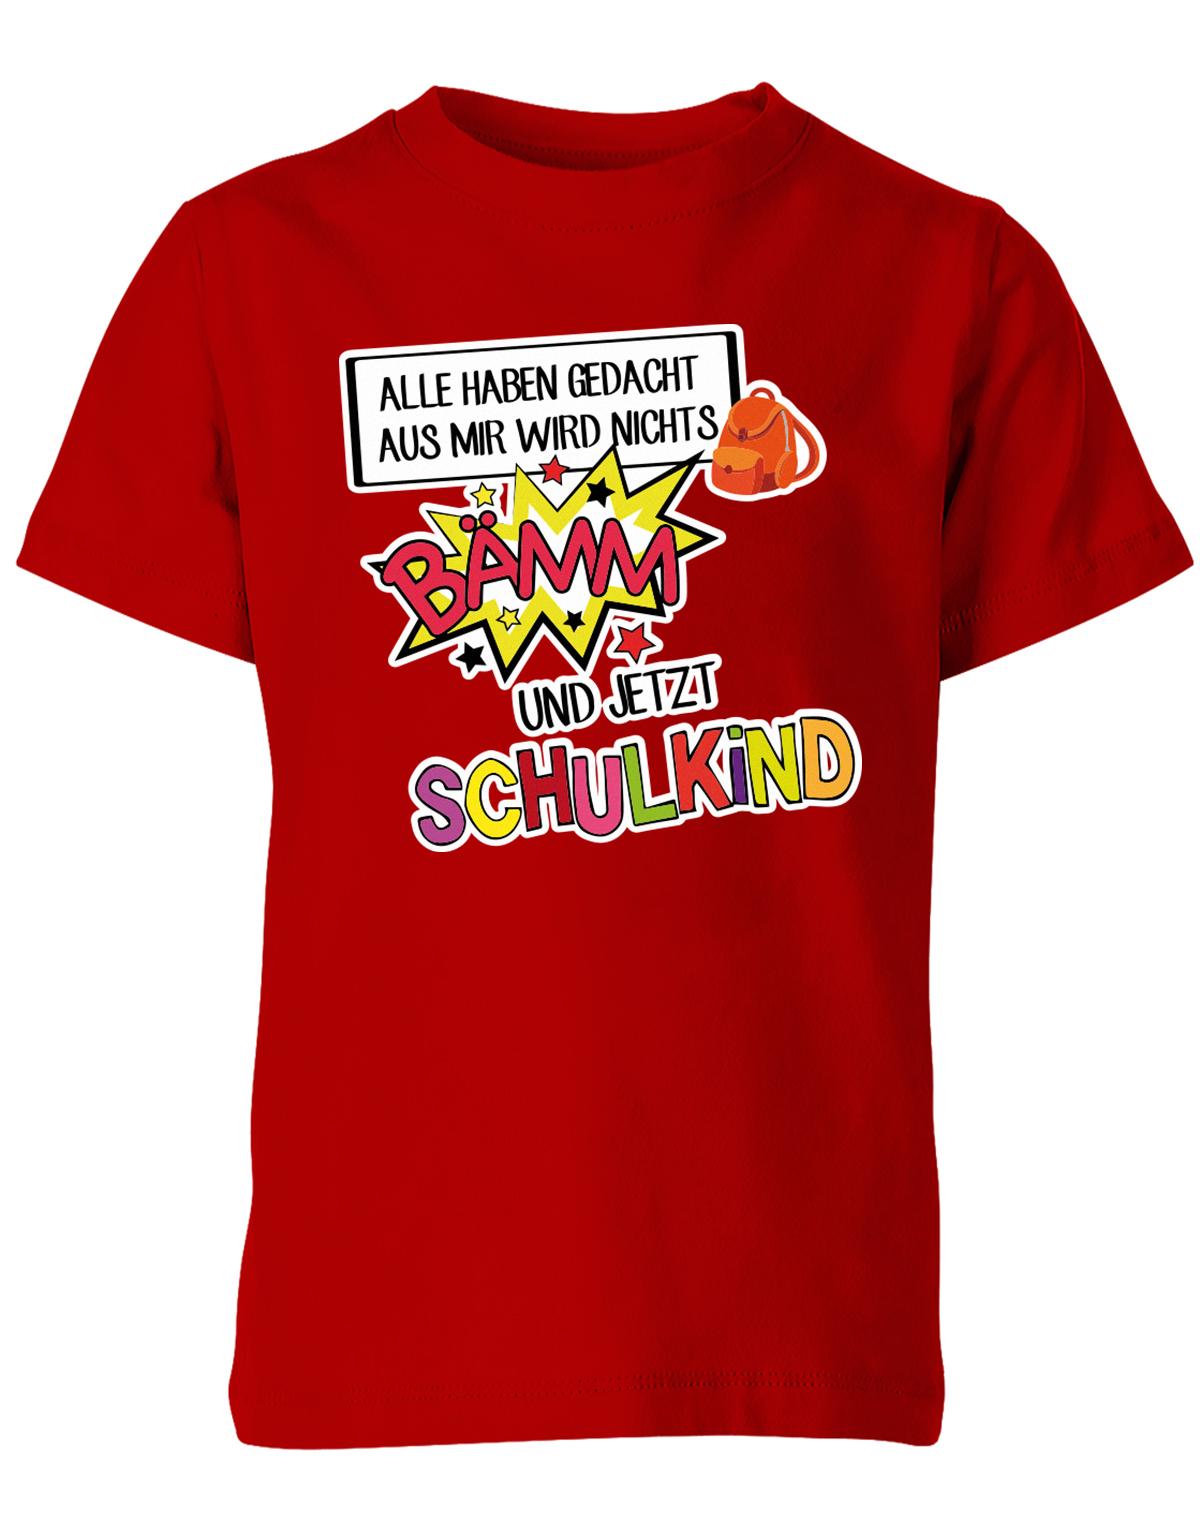 Alle haben gedacht aus mir wird nichts - bämm Schulkind - Einschulung T-Shirt Rot